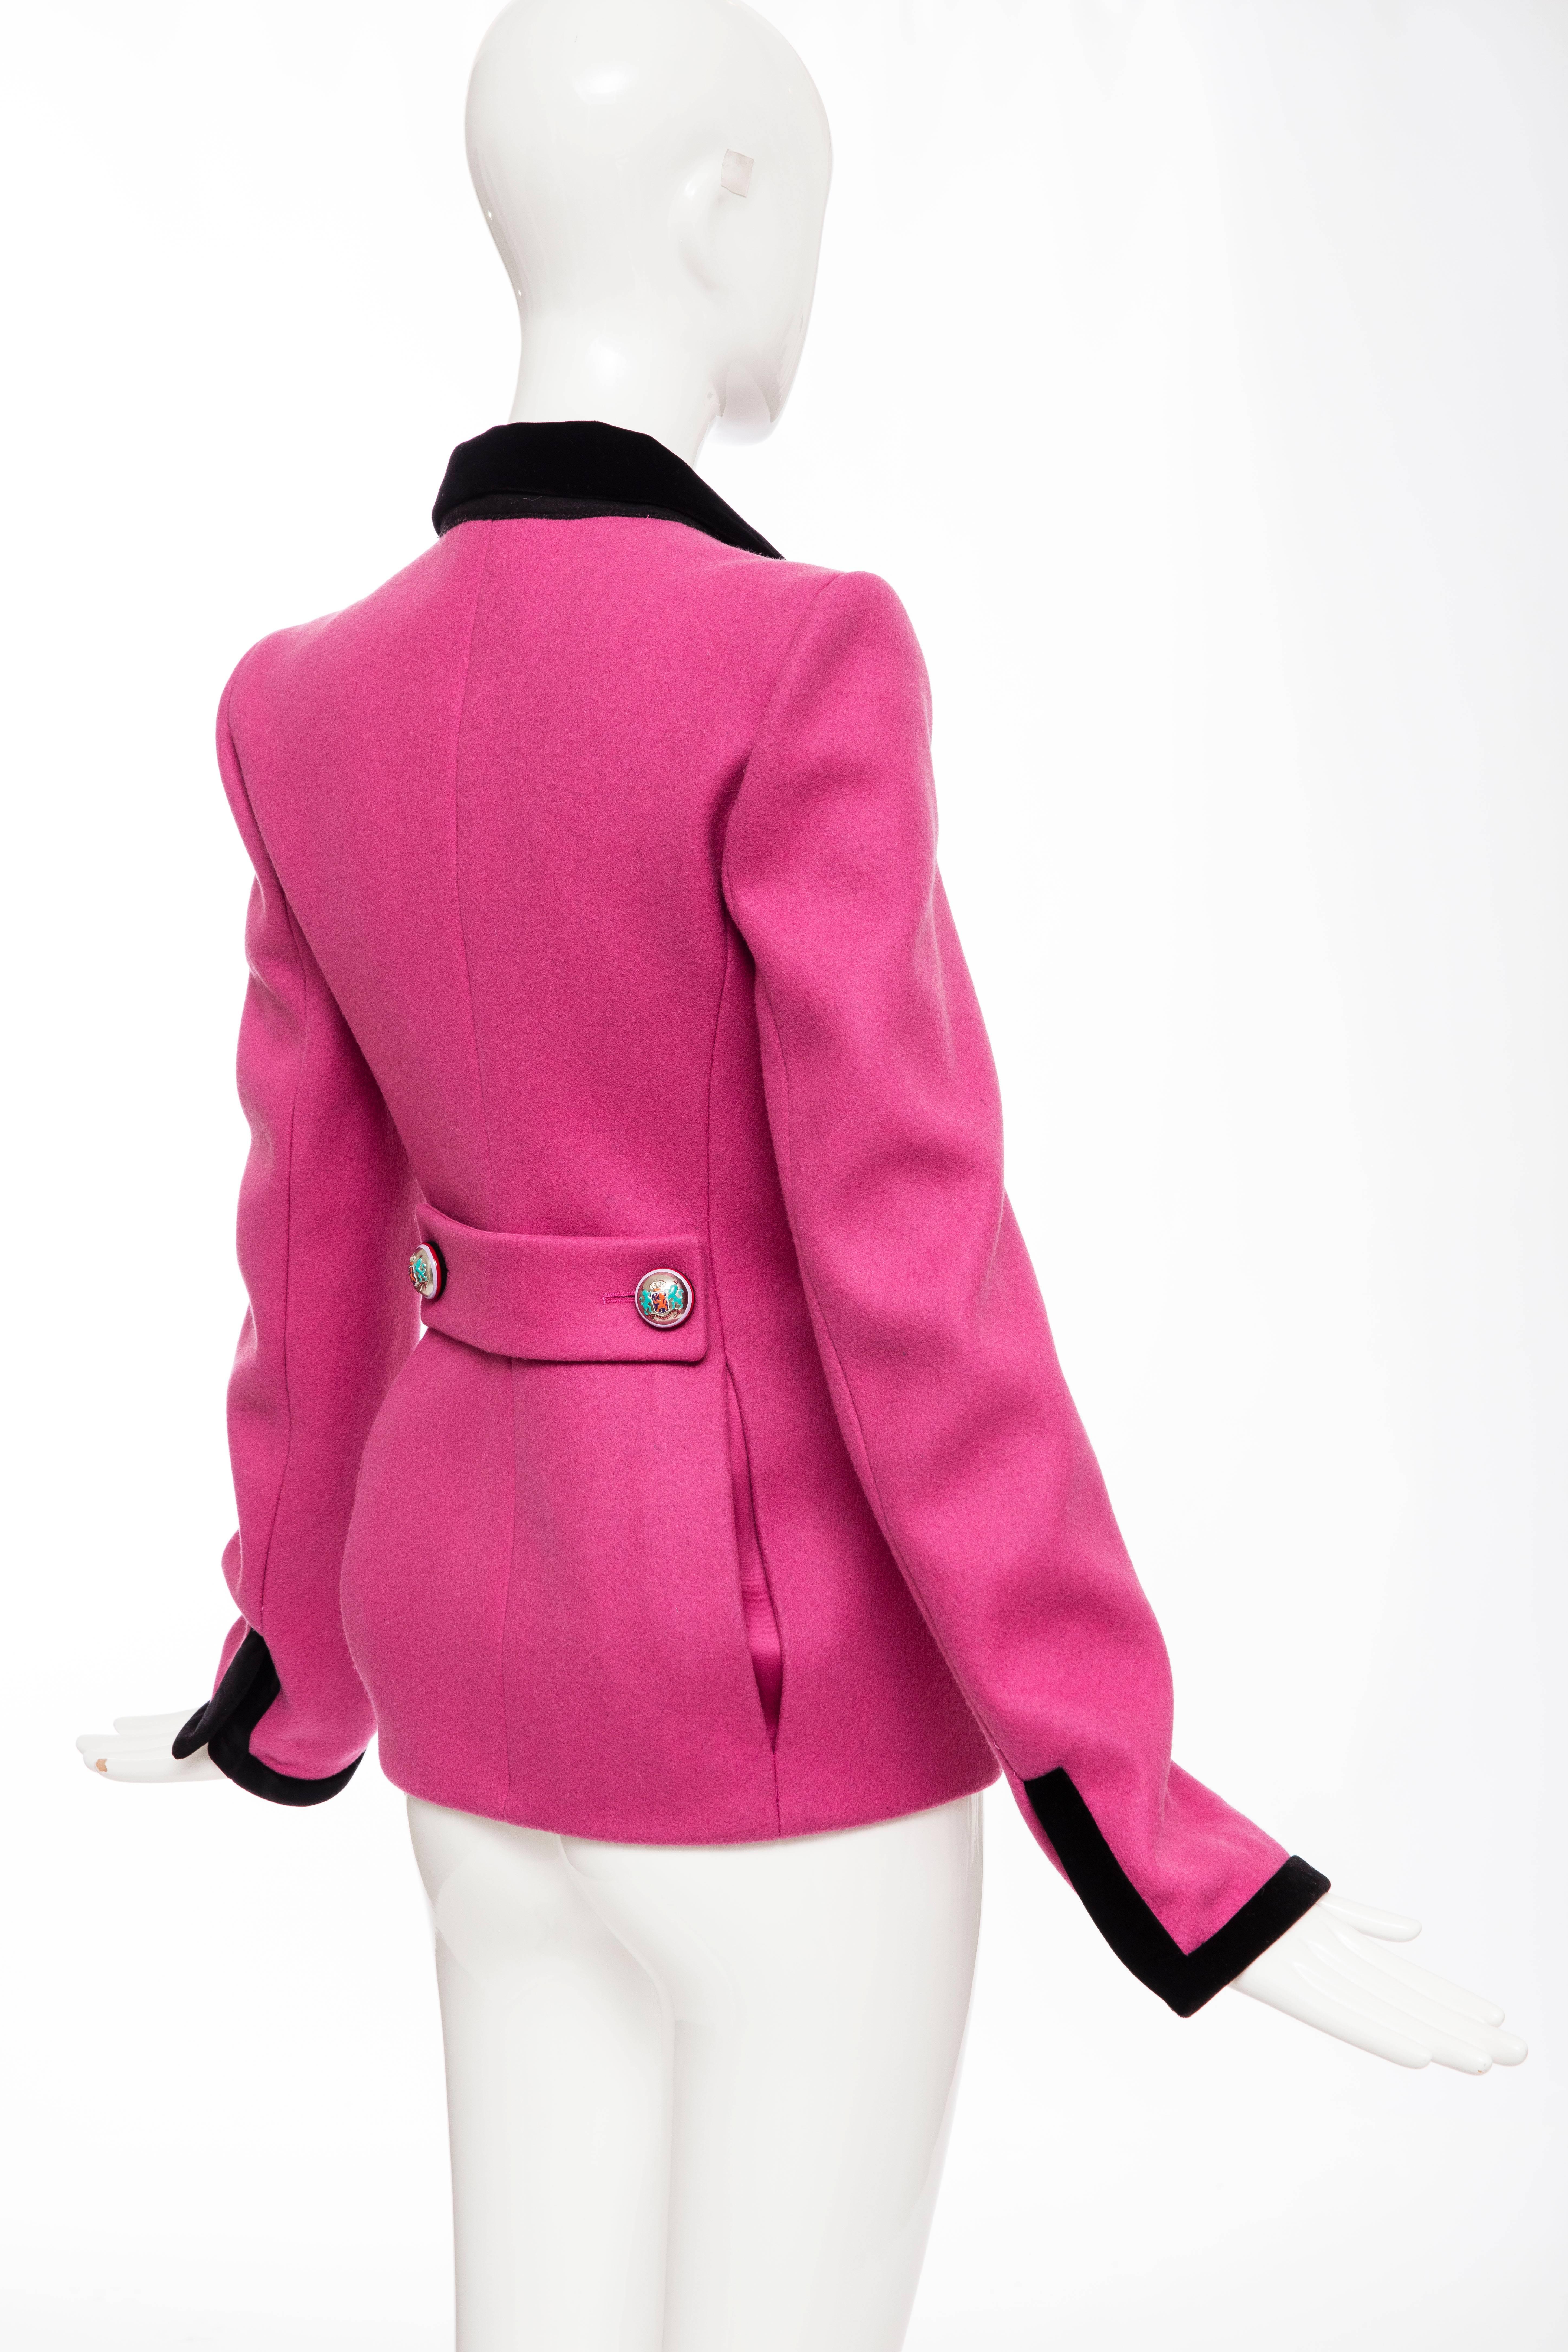  Nicolas Ghesquière for Balenciaga Runway Pink Wool Velvet Blazer, Fall 2007 For Sale 1